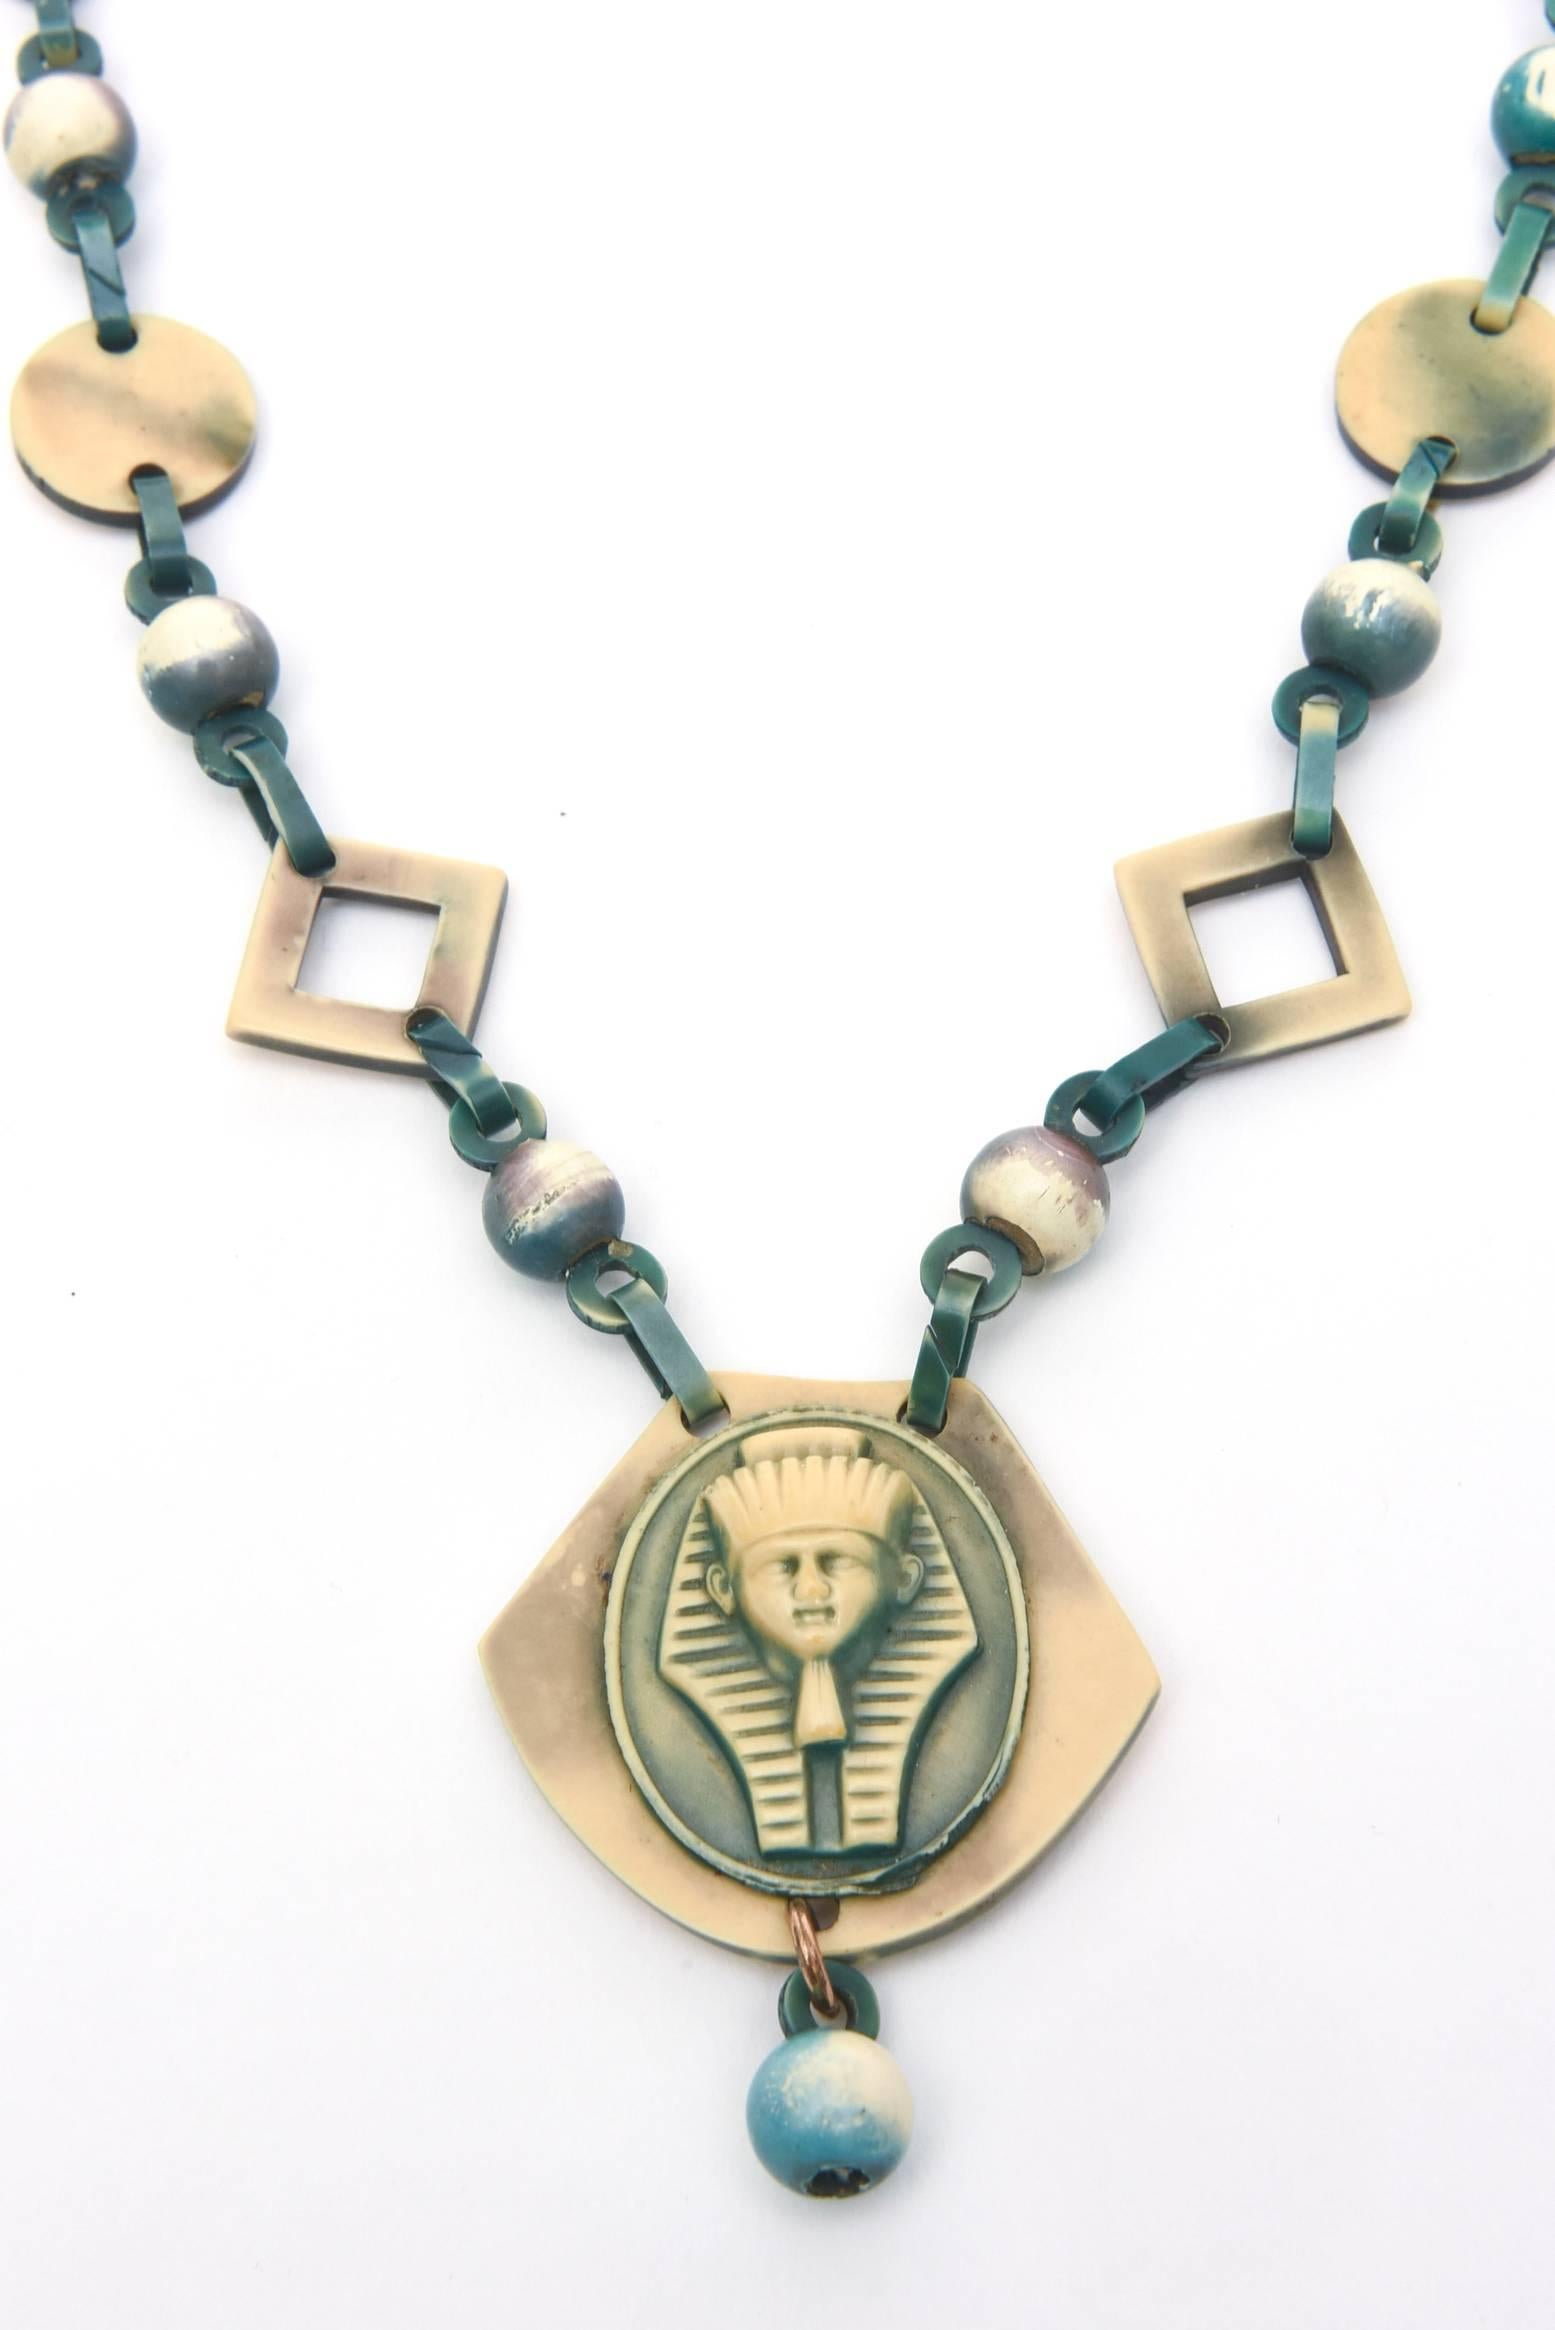 Diese interessante und halblange Vintage-Halskette mit schönen Farben aus Zelluloid, das wie Bakelit ist, hat einen ägyptischen Revival-Einfluss mit einem Art-Déco-Gefühl und Zeitraum, aber es ist modern. Zelluloid war aus der gleichen Zeit. es ist